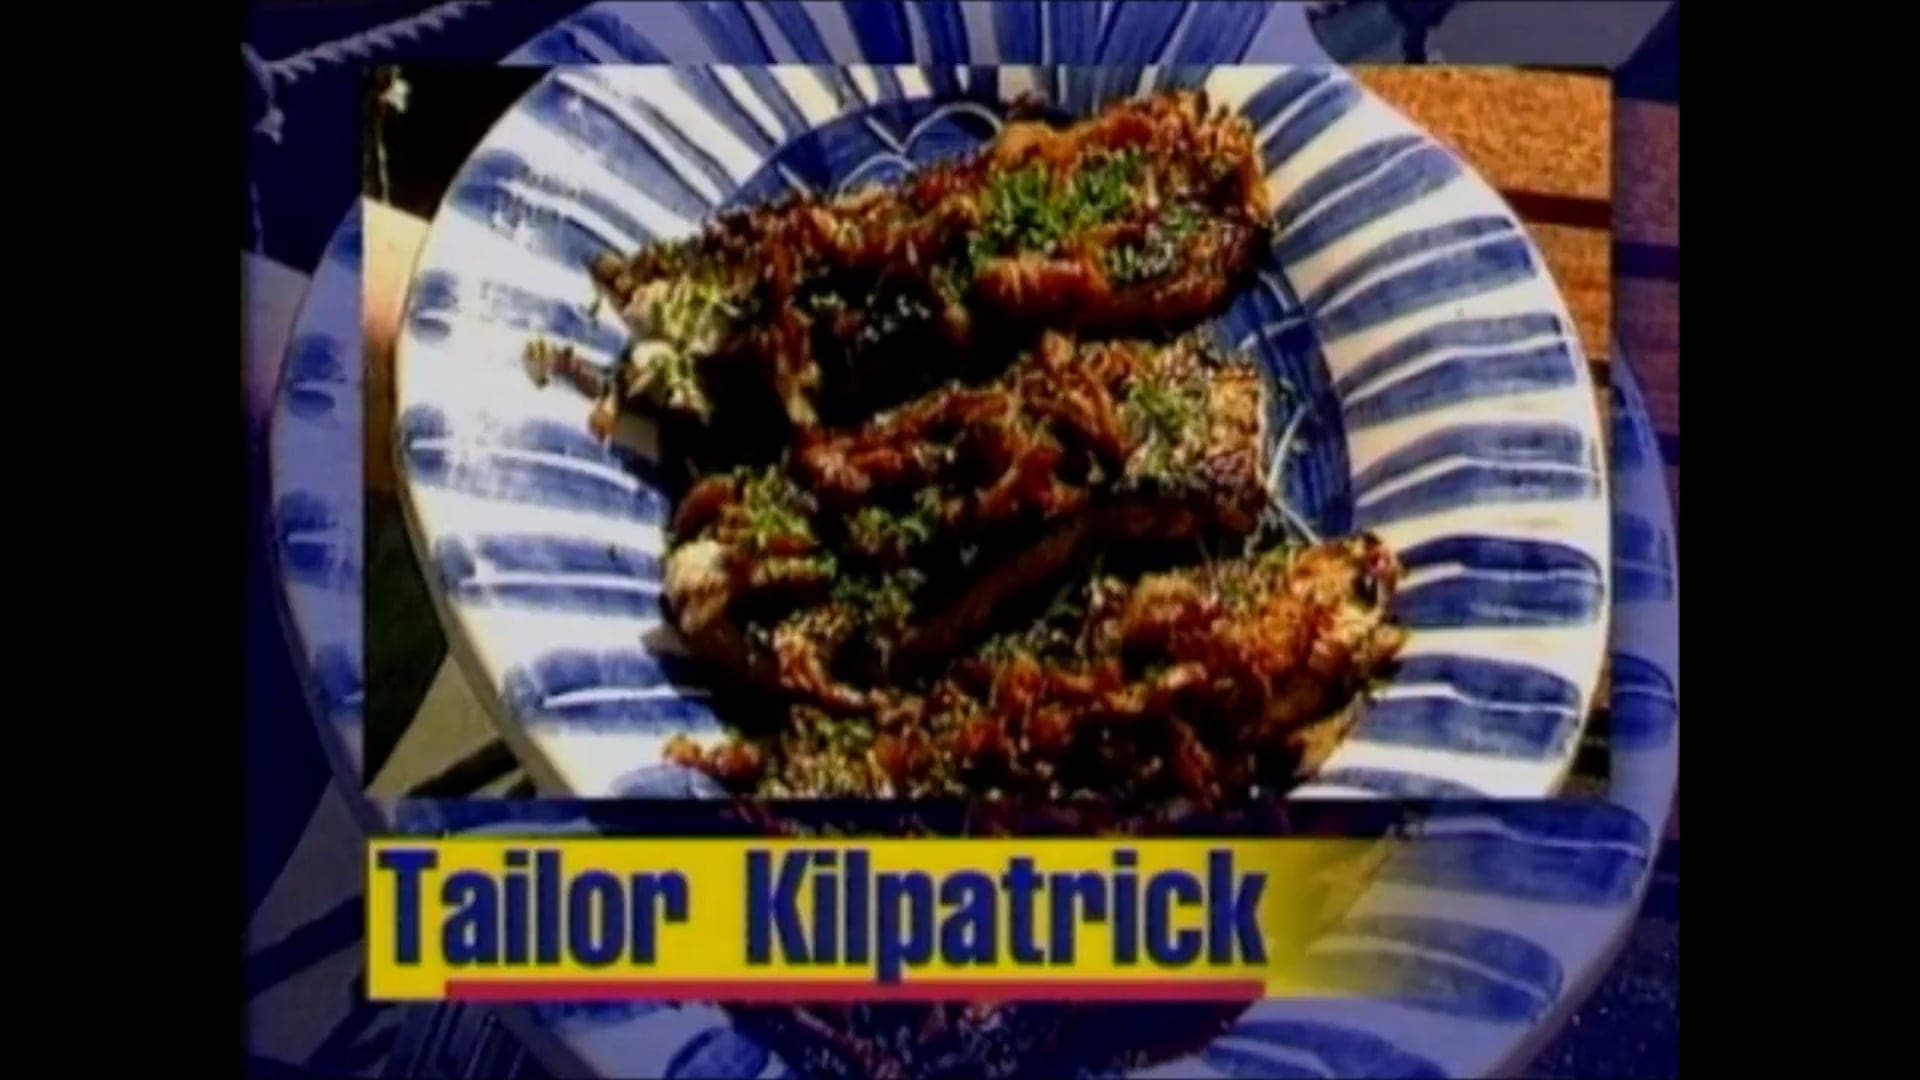 Tailor Kilpatrick